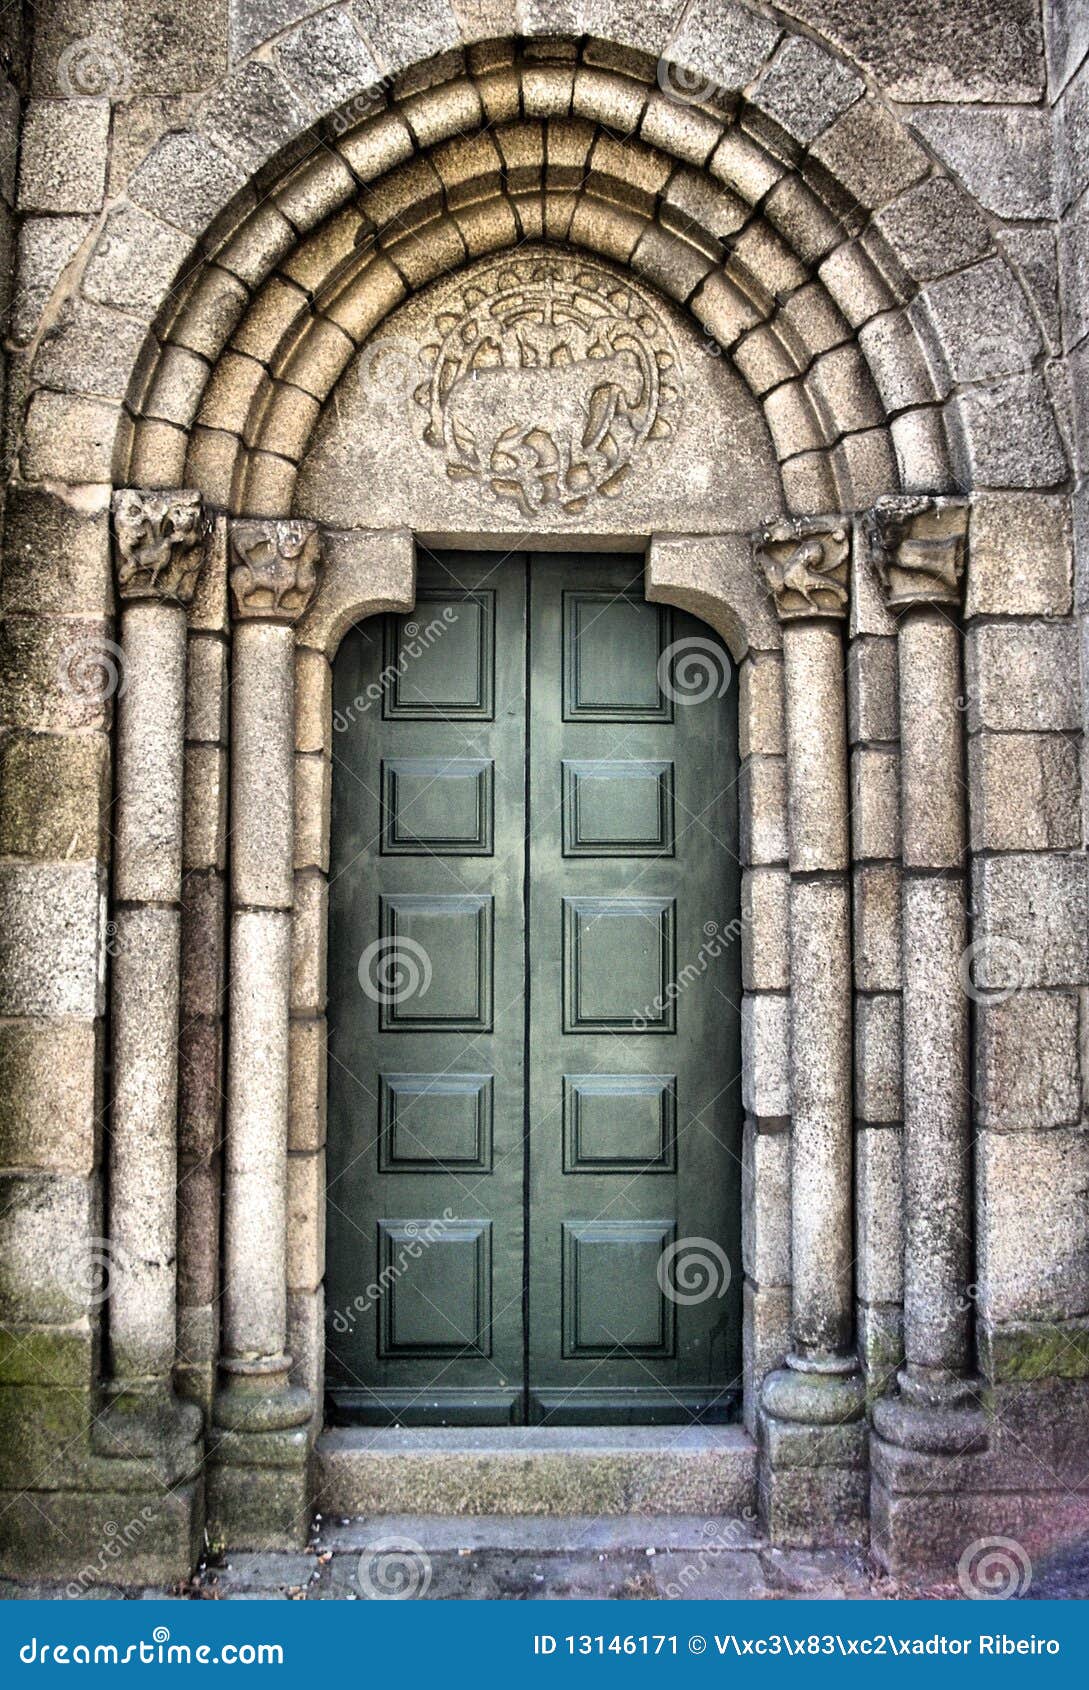 romanesque church portal diagram